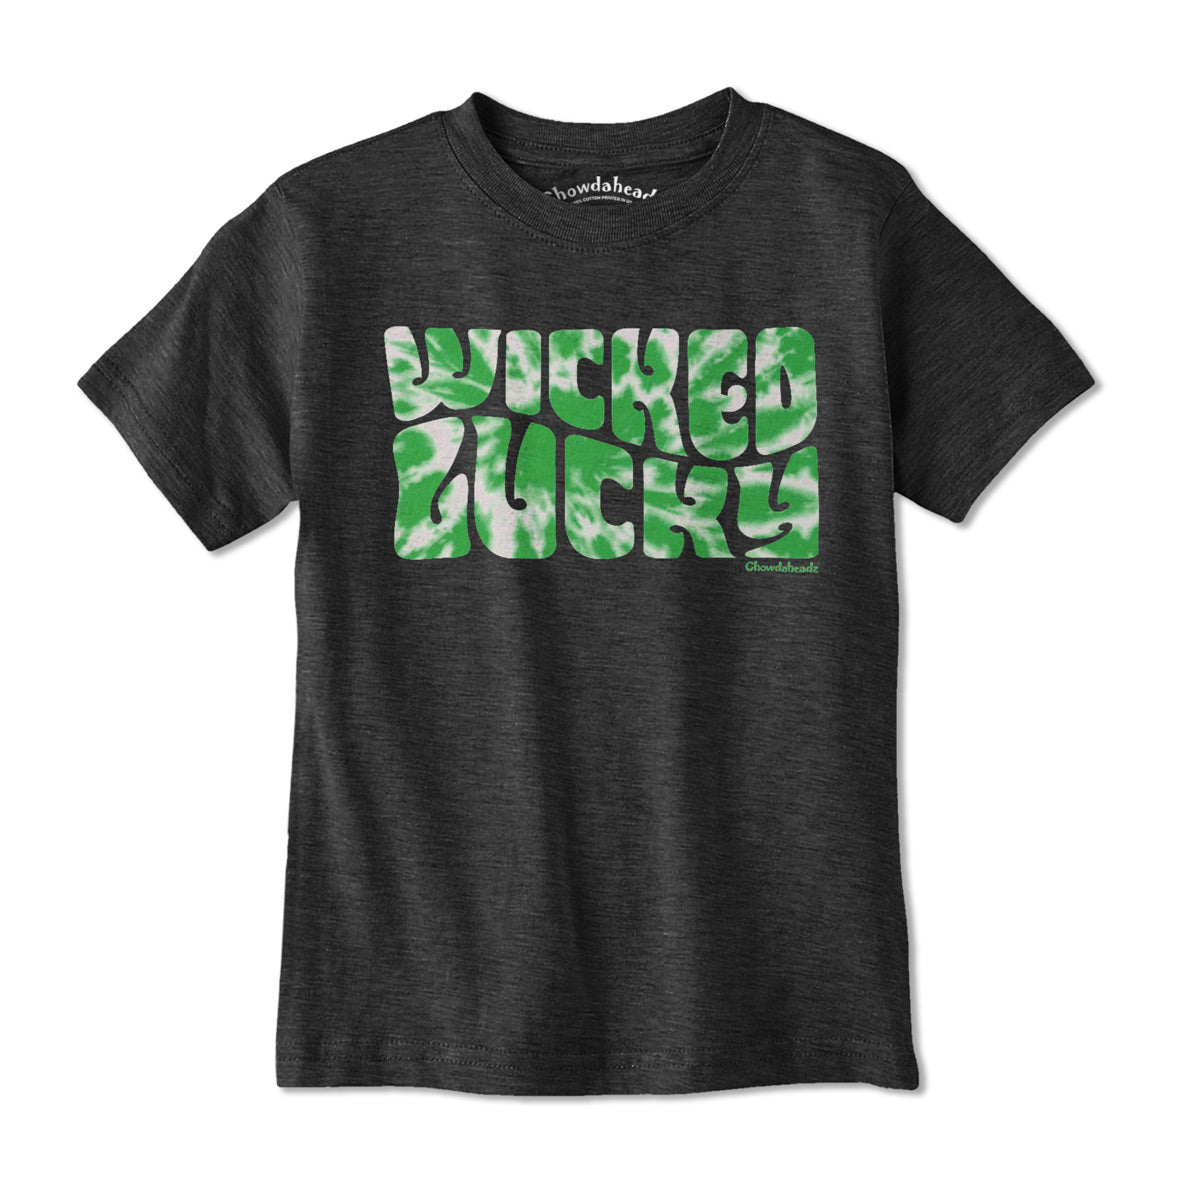 Wicked Lucky Tie Dye Youth T-Shirt - Chowdaheadz